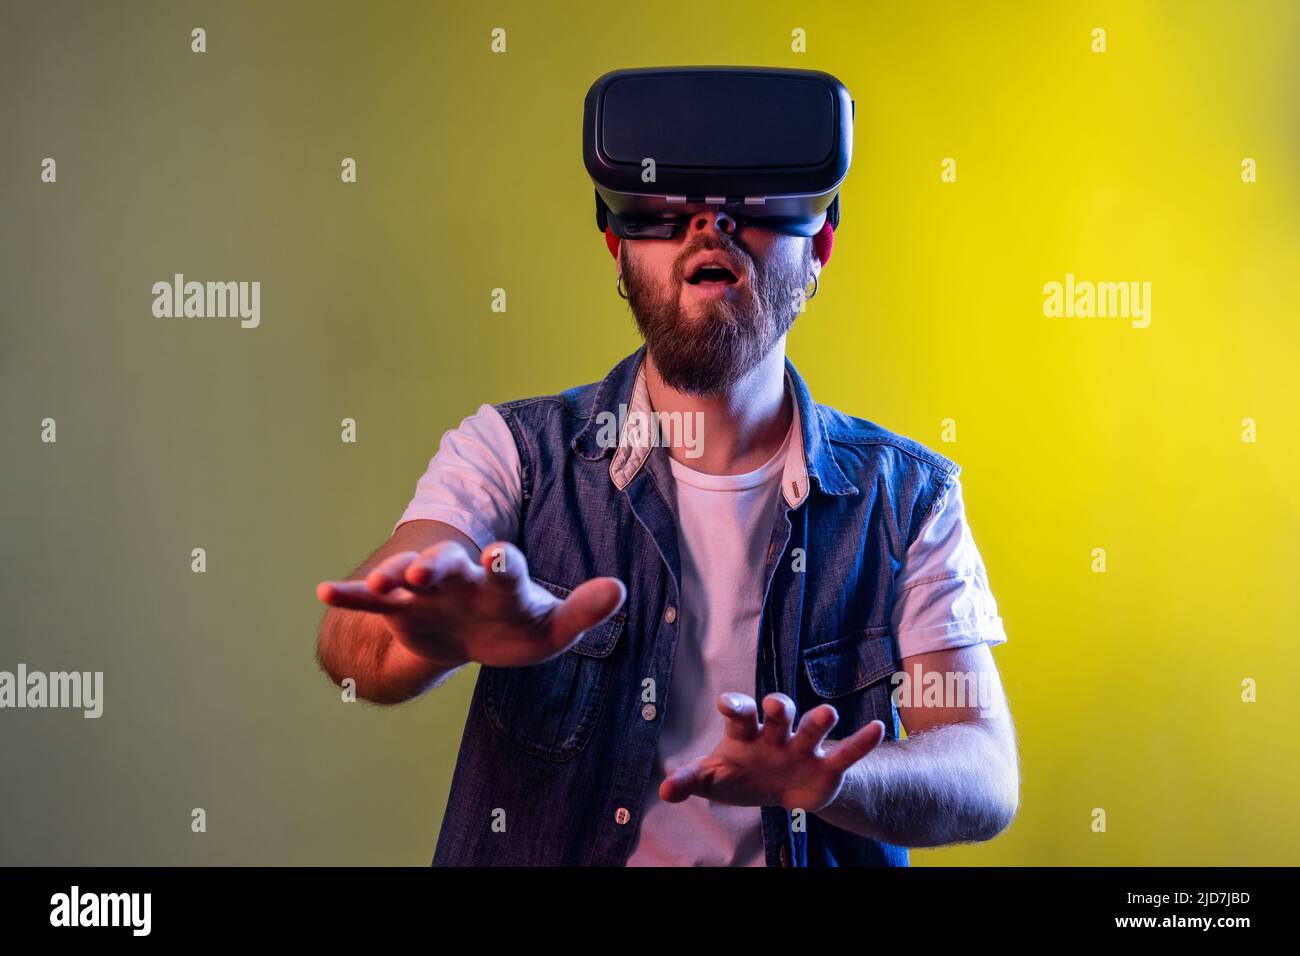 Stupito uomo hipster in piedi in realtà virtuale cuffie, giocare video gioco e cercare di toccare qualcosa, indossare cappello e denim gilet. Studio interno girato isolato su colorato sfondo di luce al neon. Foto Stock